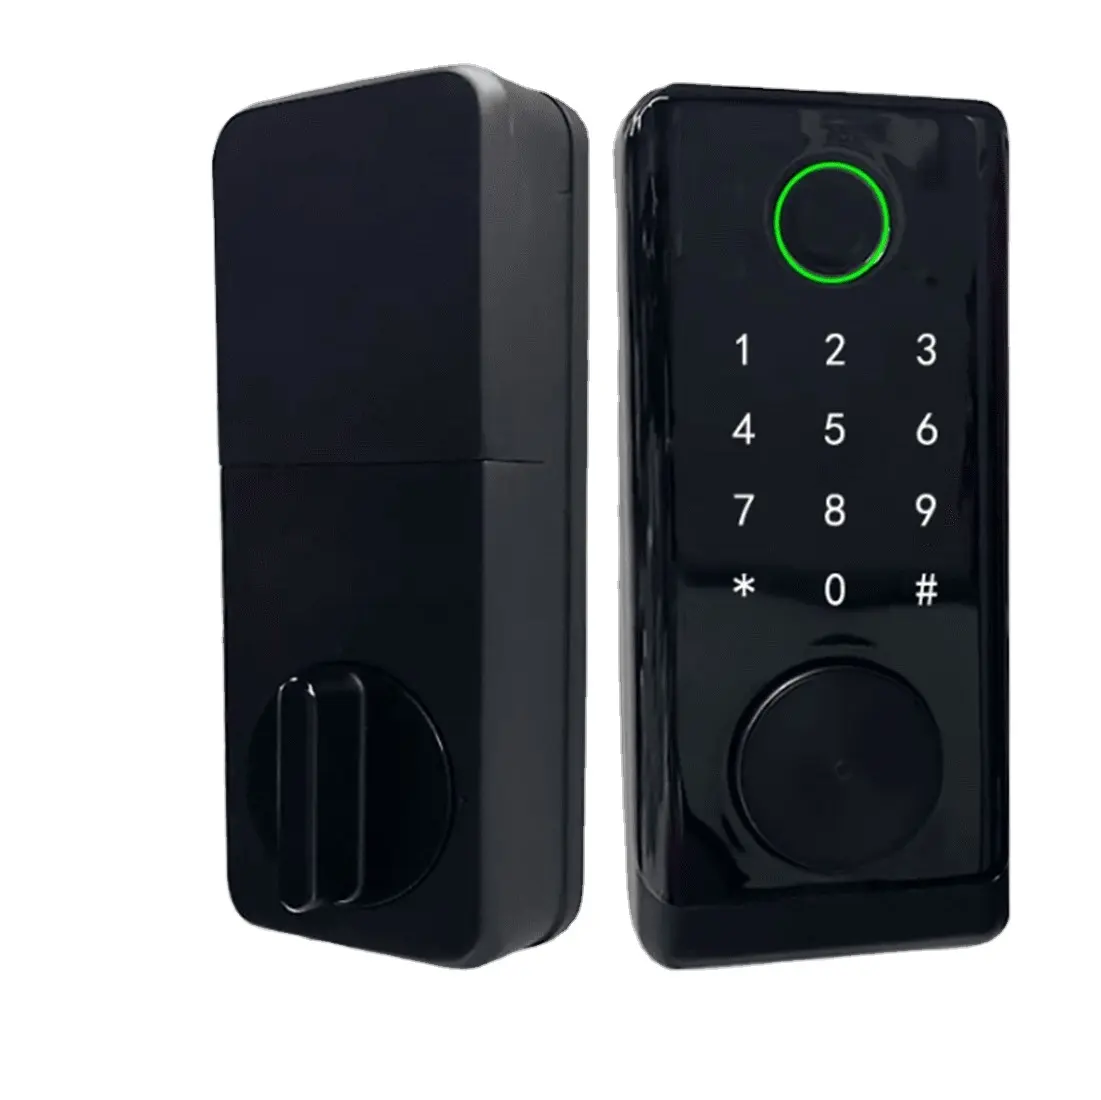 Adobe Master Collection Smart Door Lock With Fingerprint Smart Deadbolt Auto Lock for Home Front Door, Hotel, Office Etc.